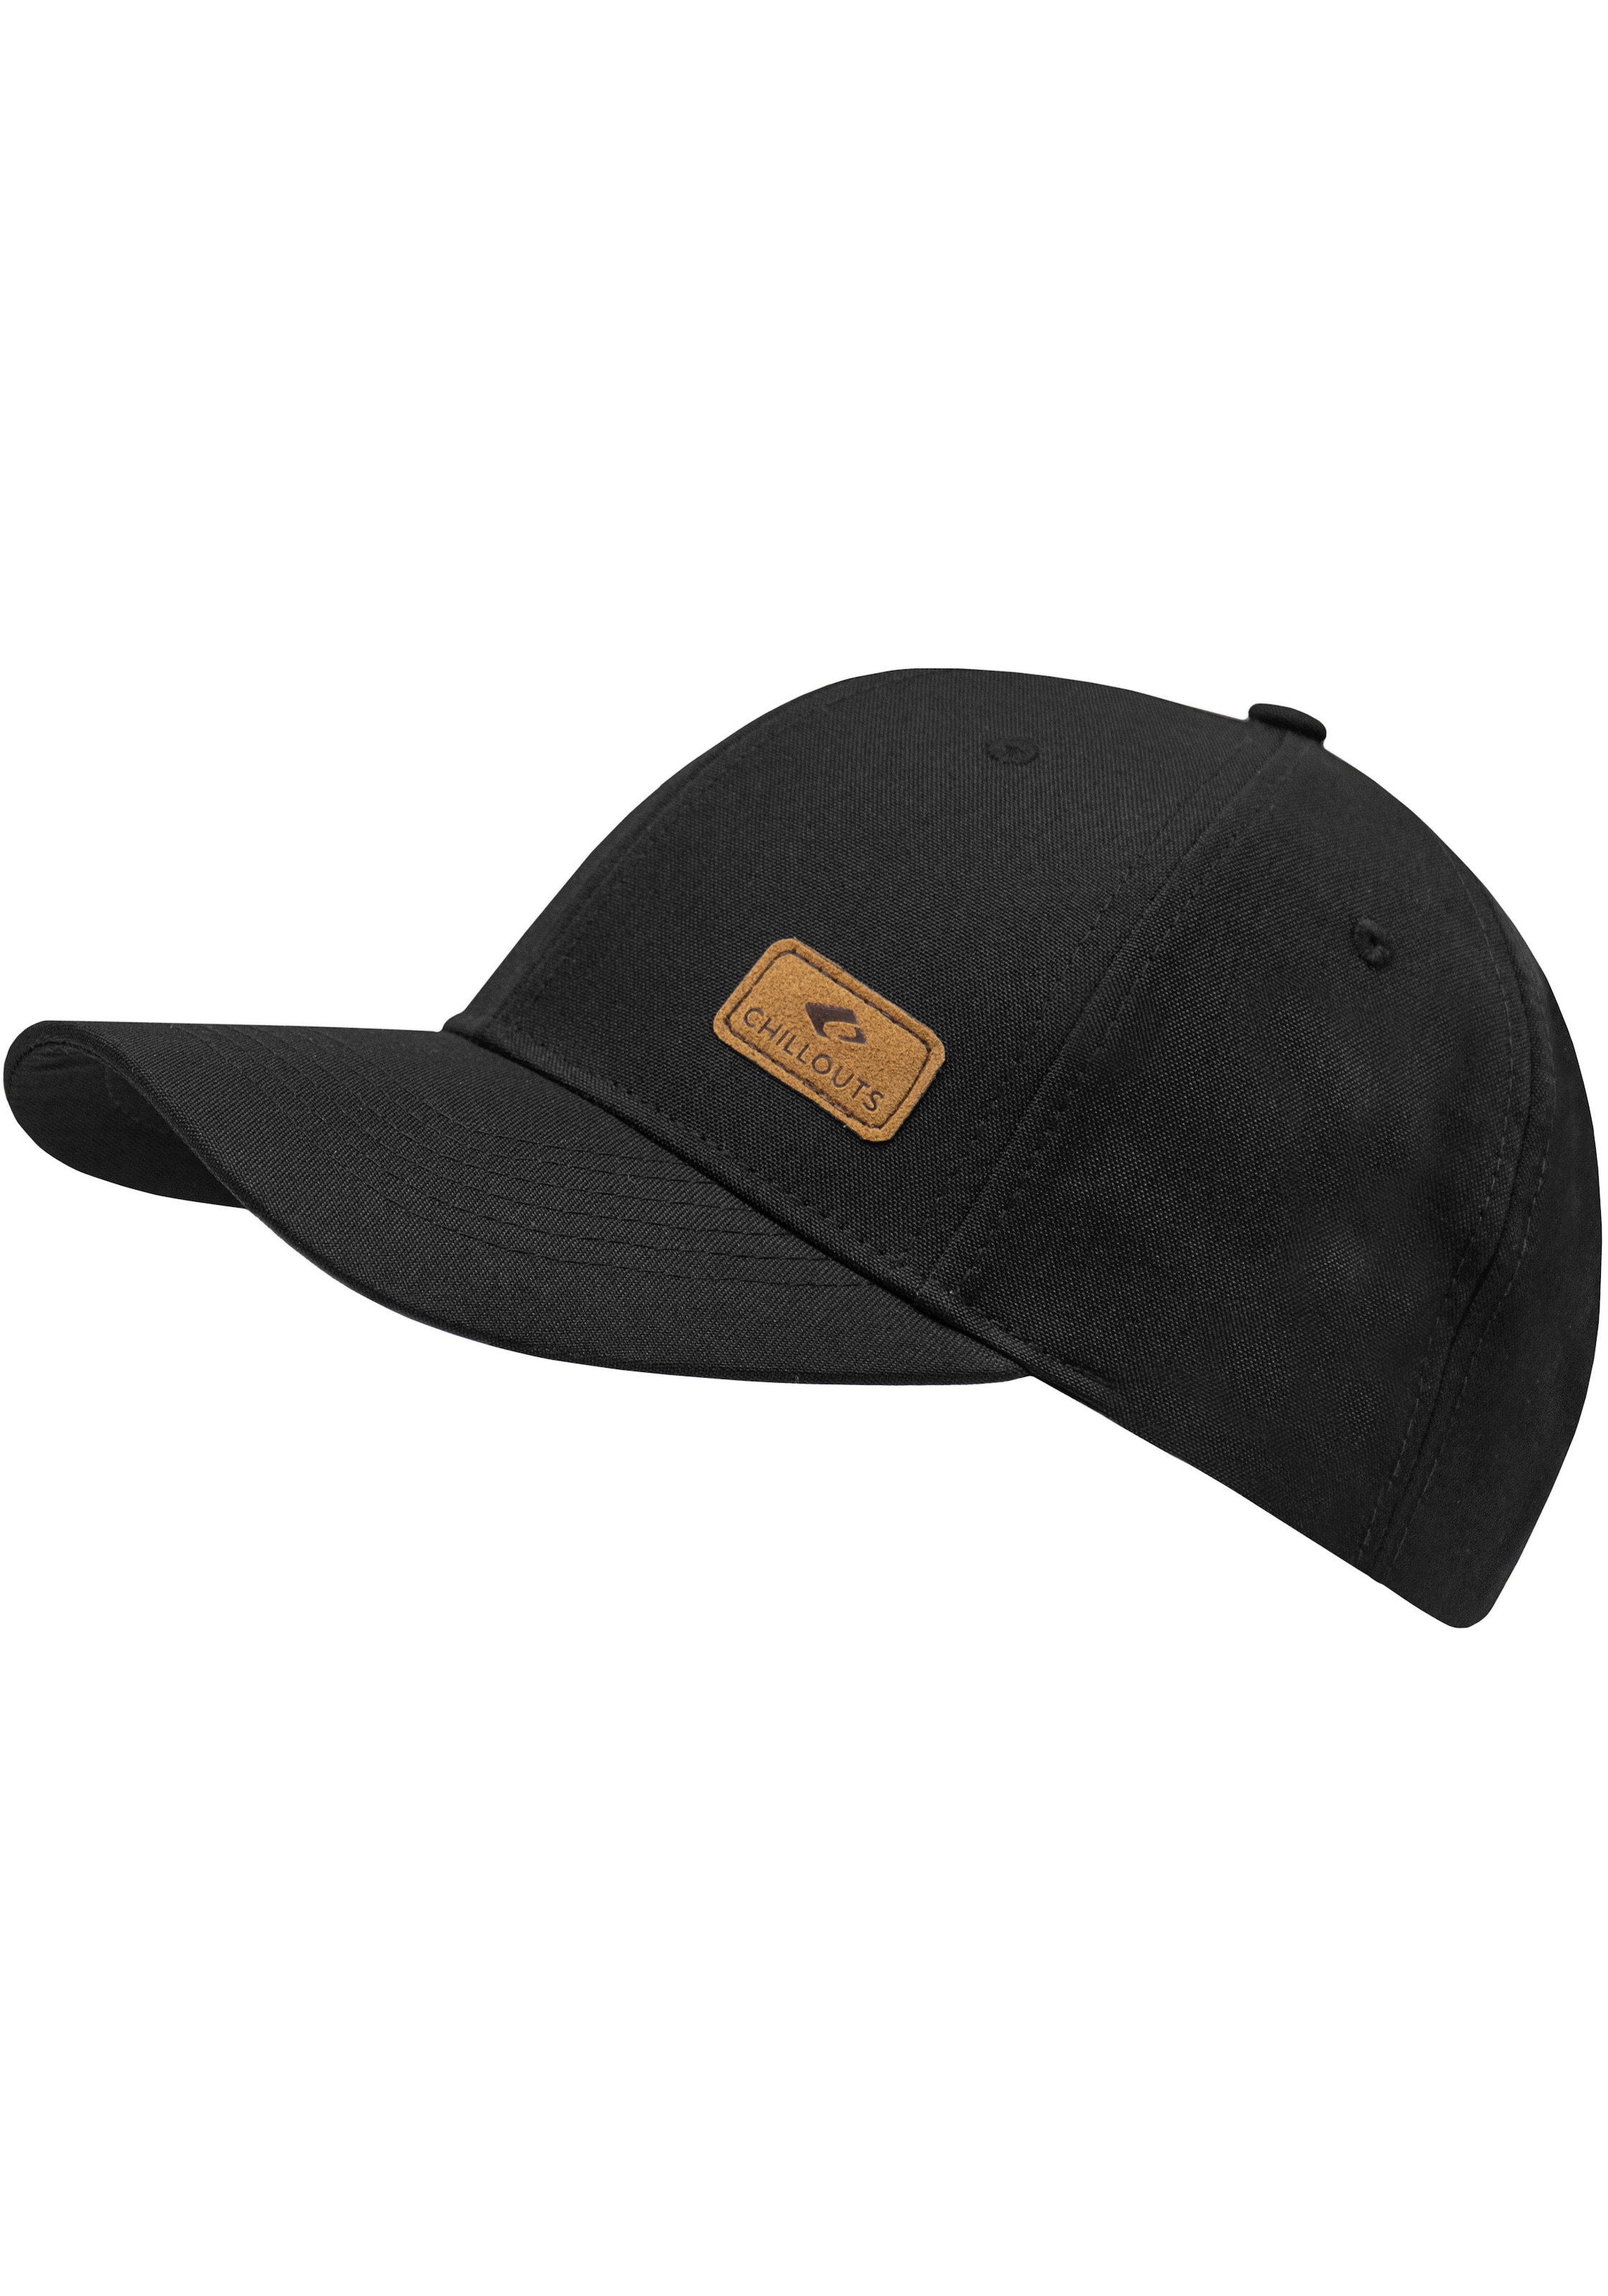 chillouts Baseball Cap, Amadora Hat Size, im kaufen verstellbar in melierter Optik, One Online-Shop